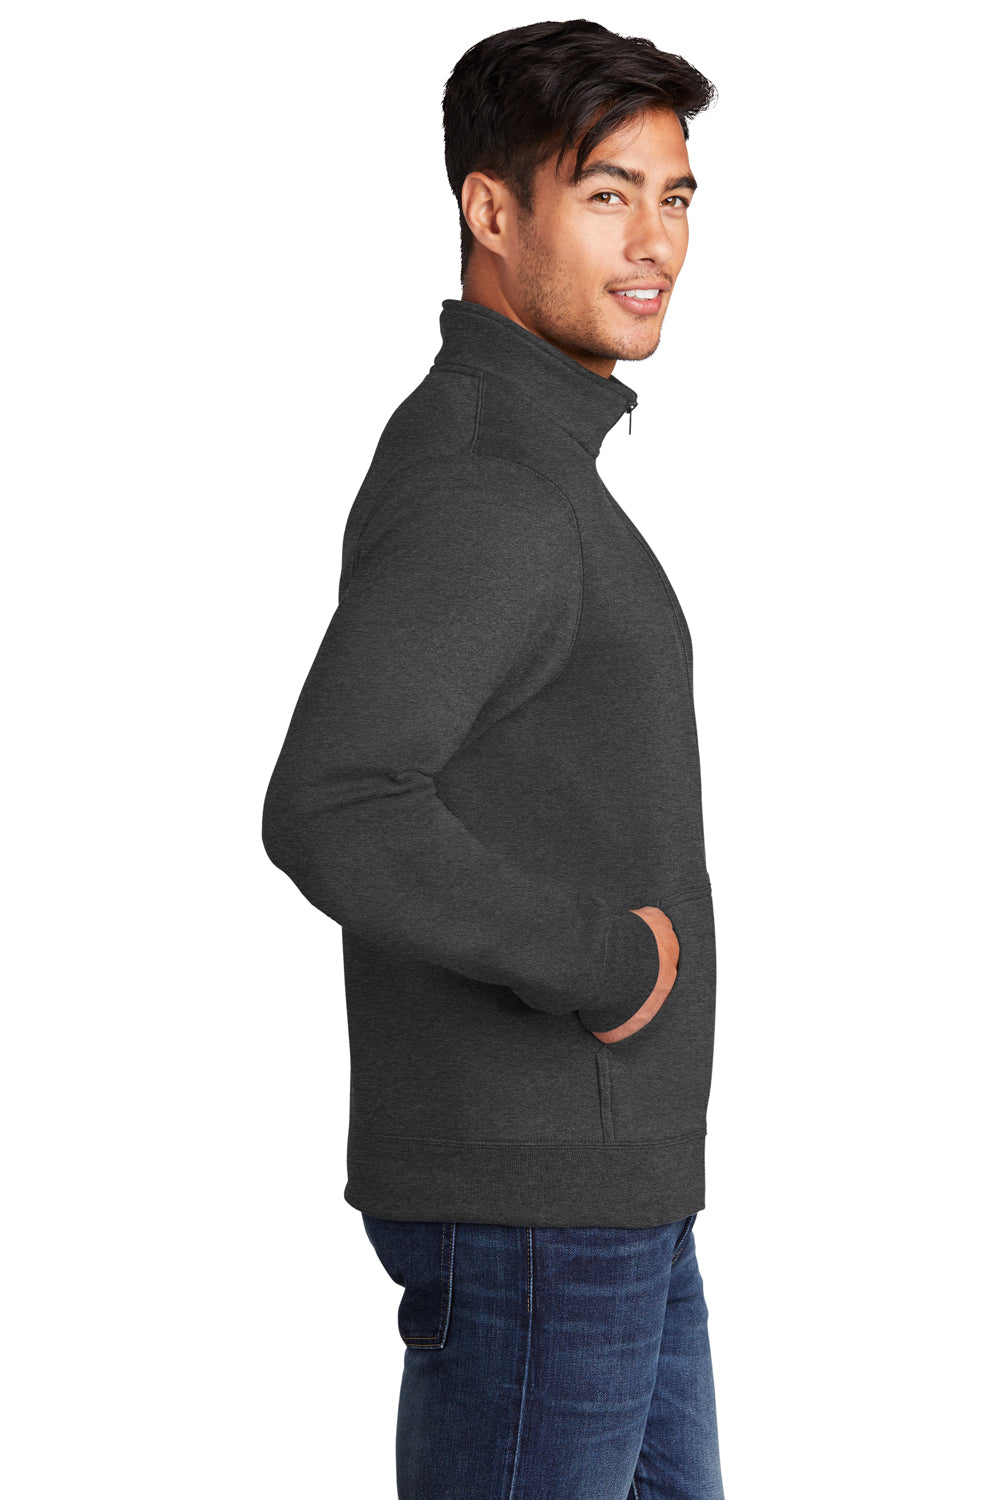 Port & Company Mens Core Fleece Full Zip Sweatshirt Heather Dark Grey Side